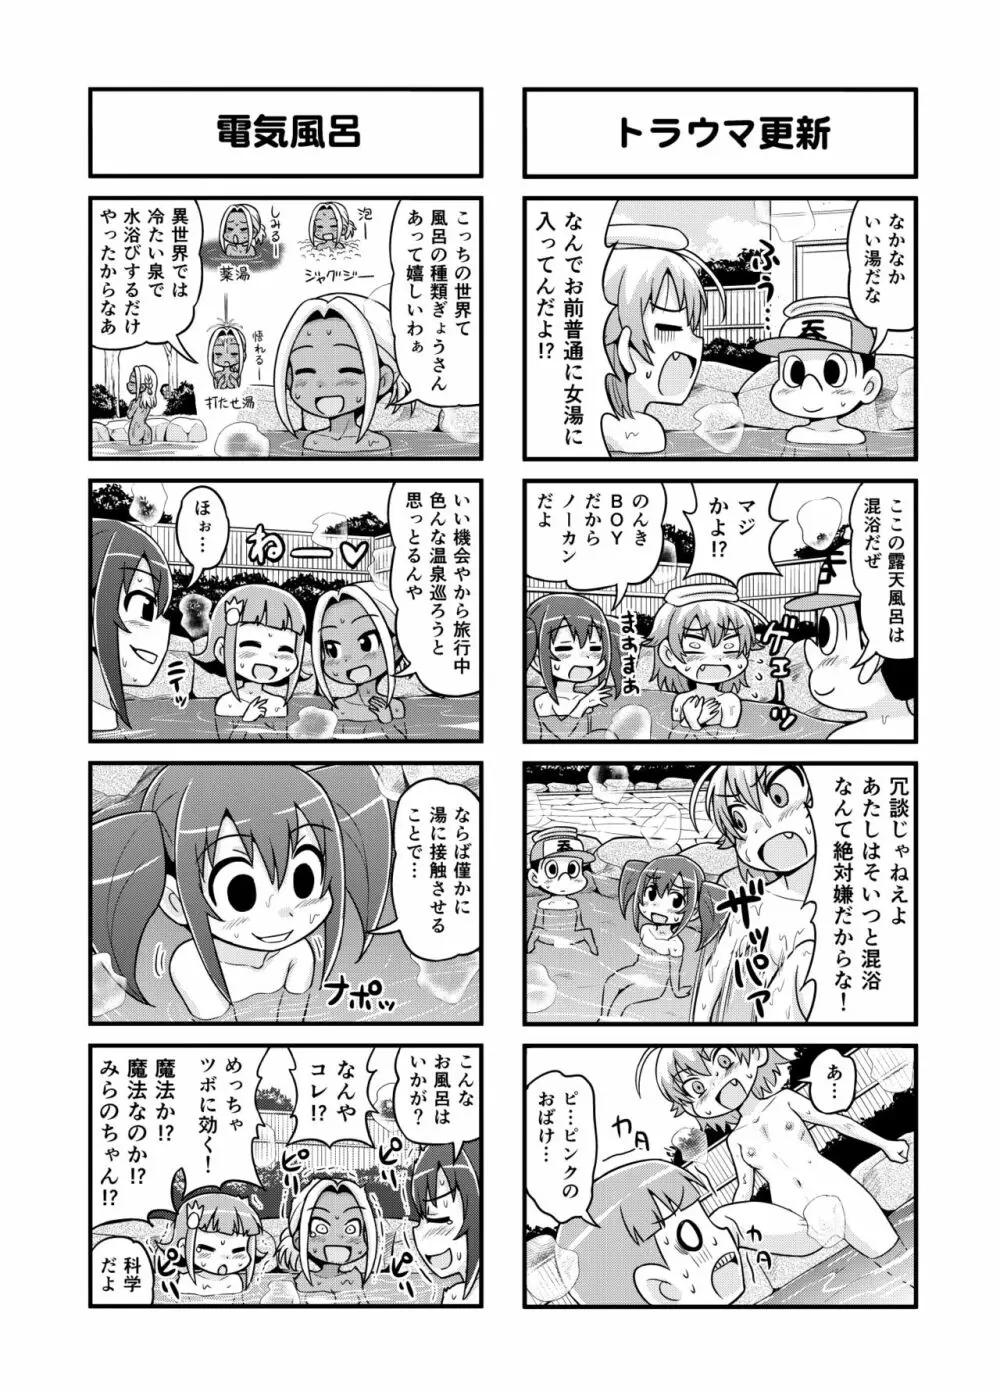 のんきBOY 1-38 138ページ